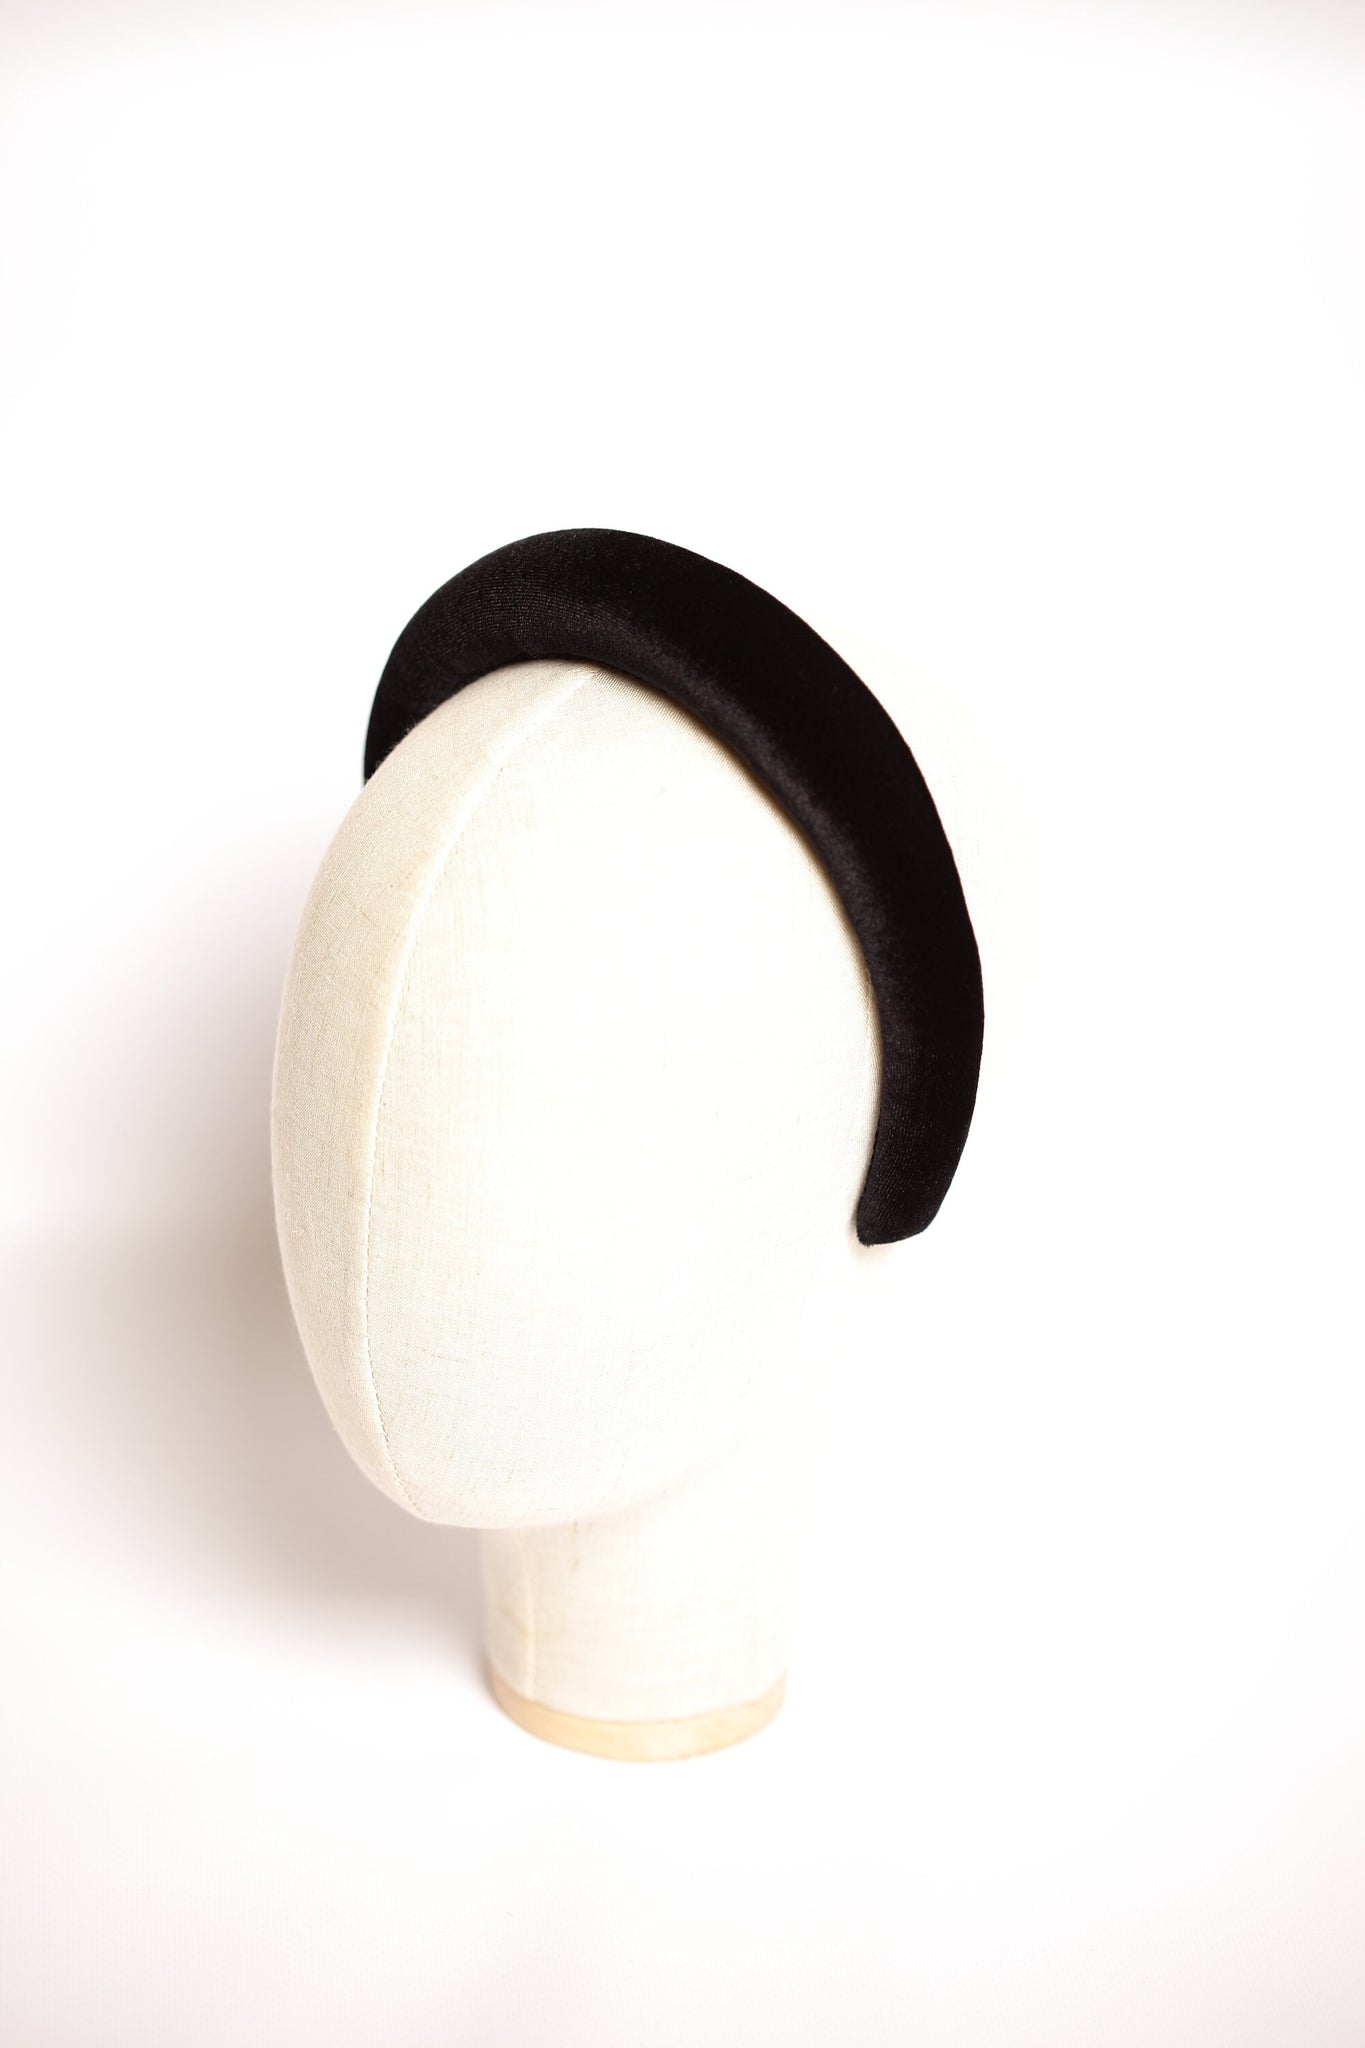 Black velvet padded headband Velvet hair band Soft headband Women headband 2.5 cm wide